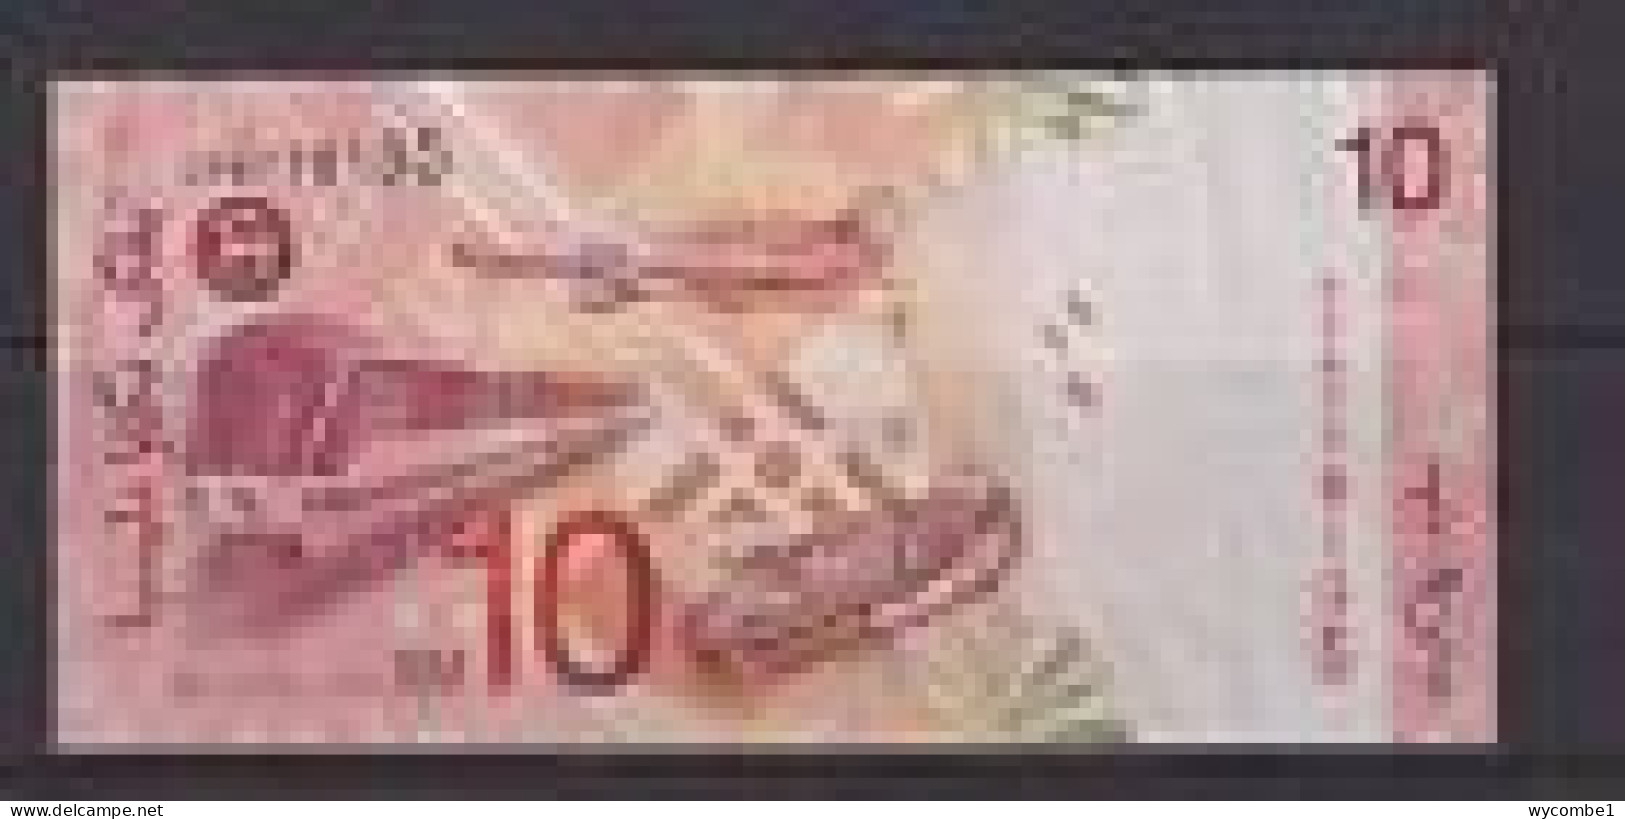 MALAYSIA - 2001 10 Ringgit Circulated Banknote - Malasia